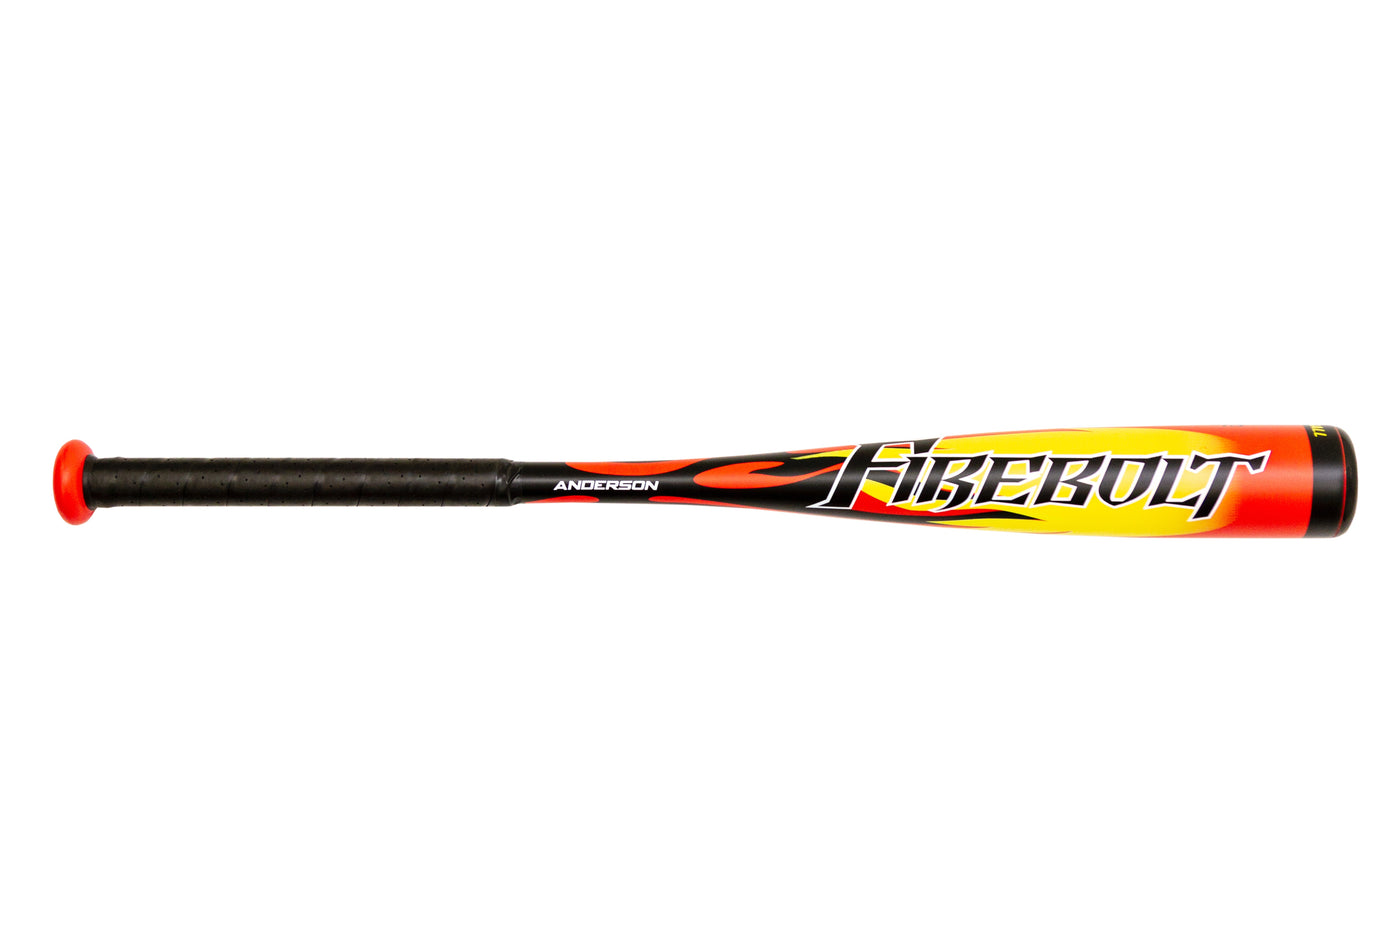 2019 Firebolt (-13) T-Ball Bat (USABat) - Anderson Bat Company